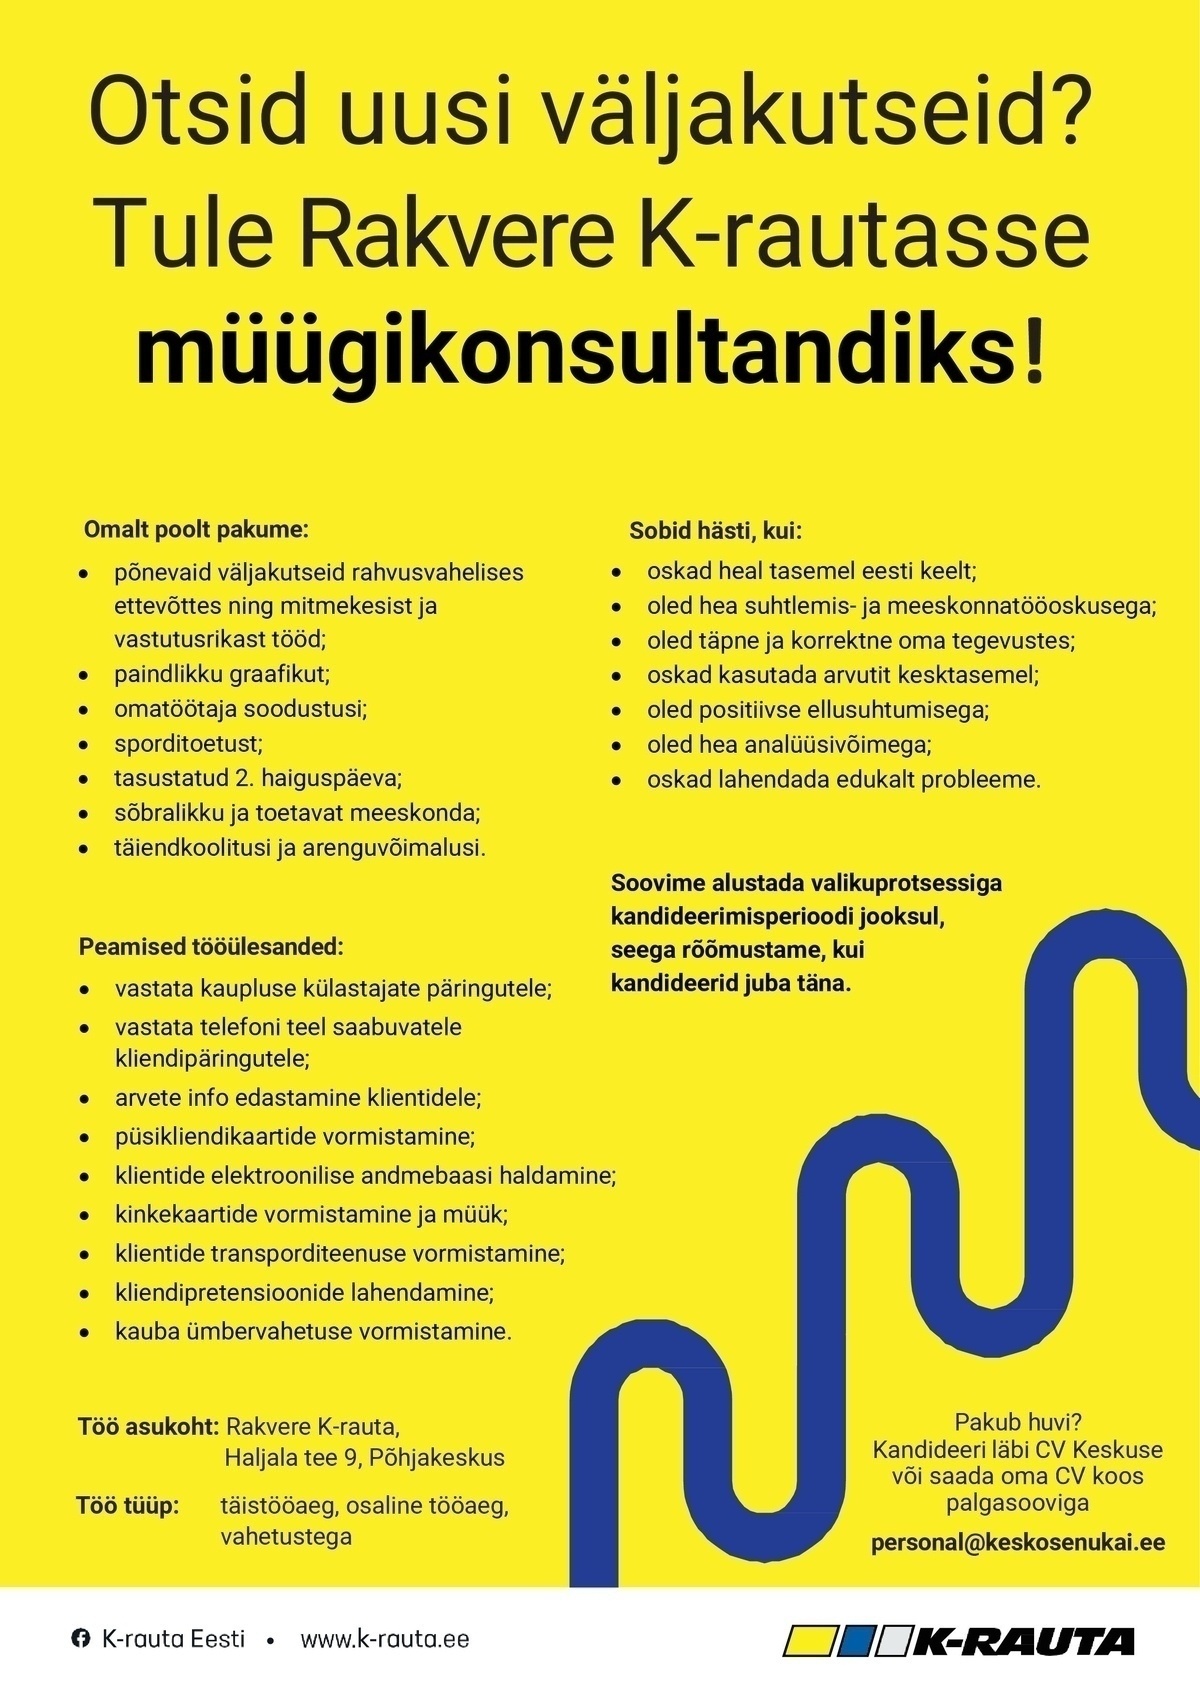 Kesko Senukai Estonia AS Müügikonsultant üldehitus osakonda Rakvere K-rautasse